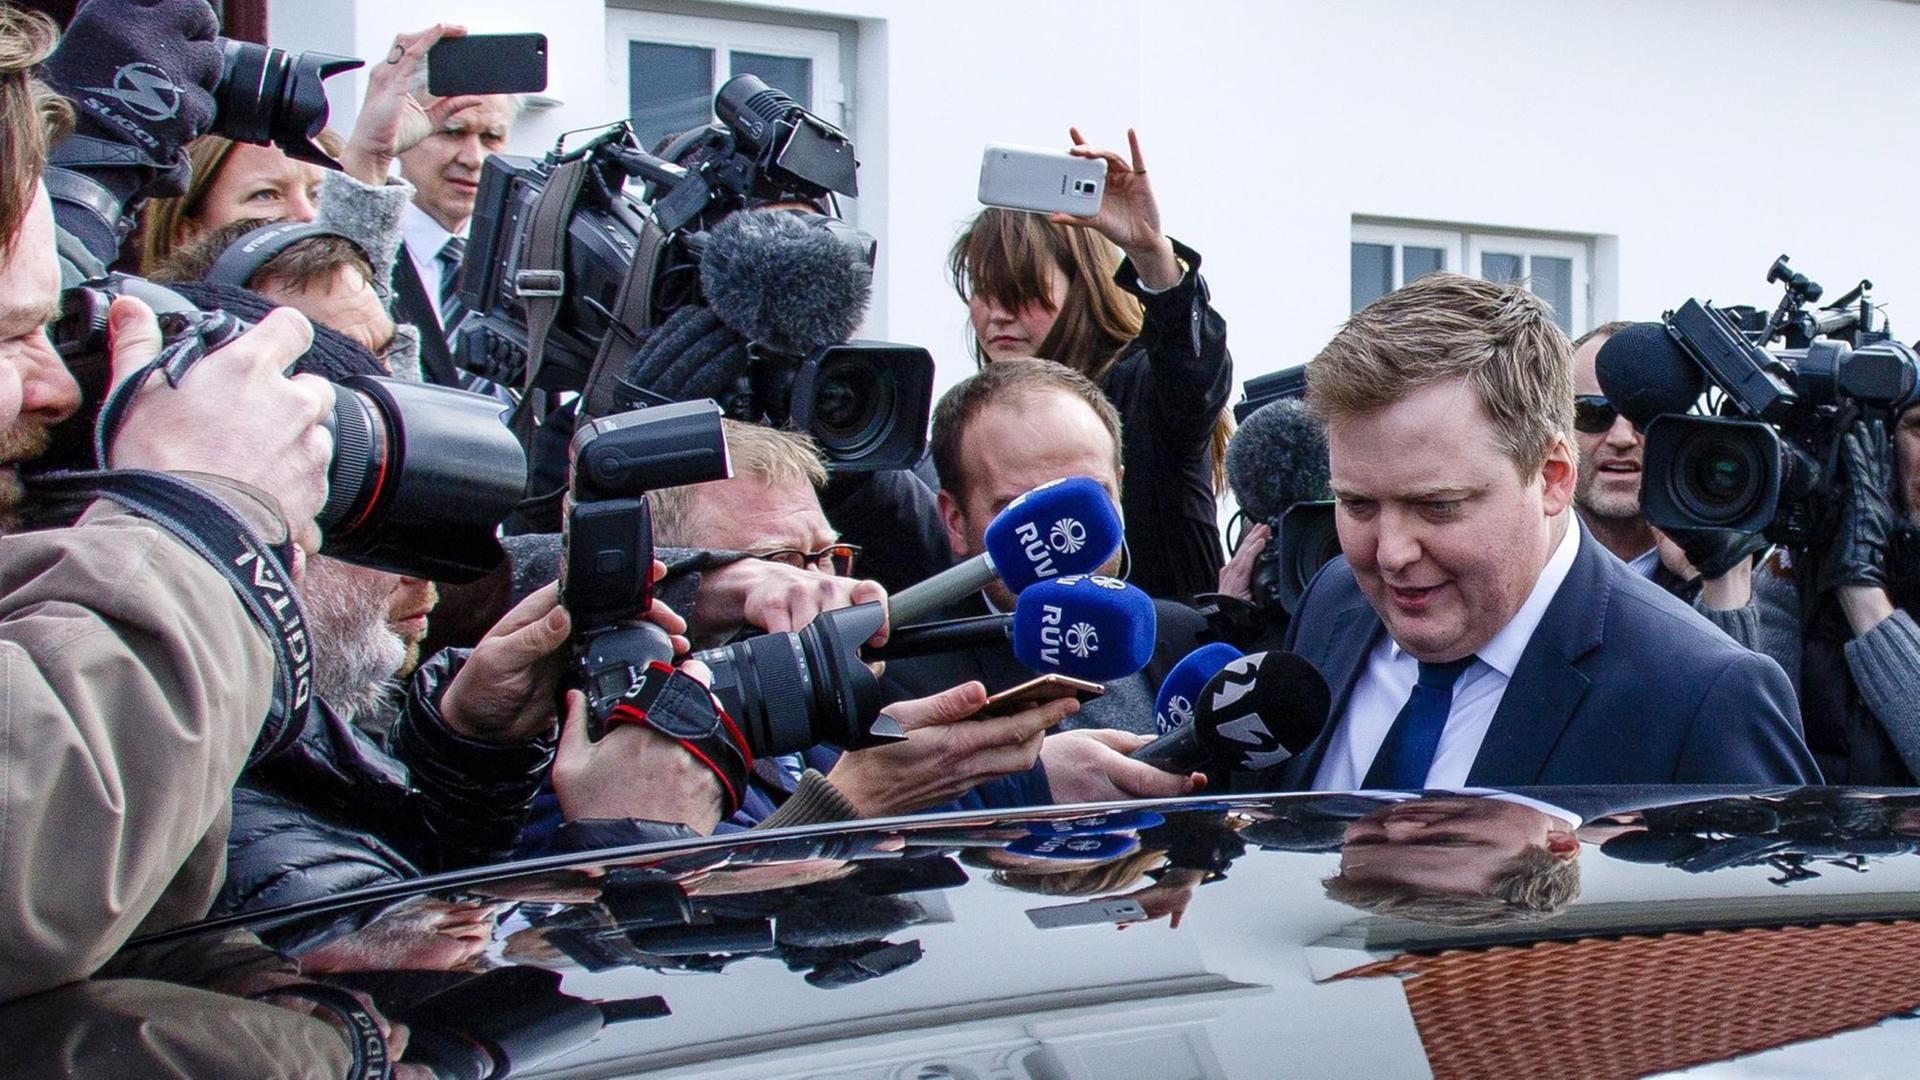 Der isländische Ministerpräsident David Sigmundur Gunnlaugsson kurz vor der Ankündigung seines Rücktritts.